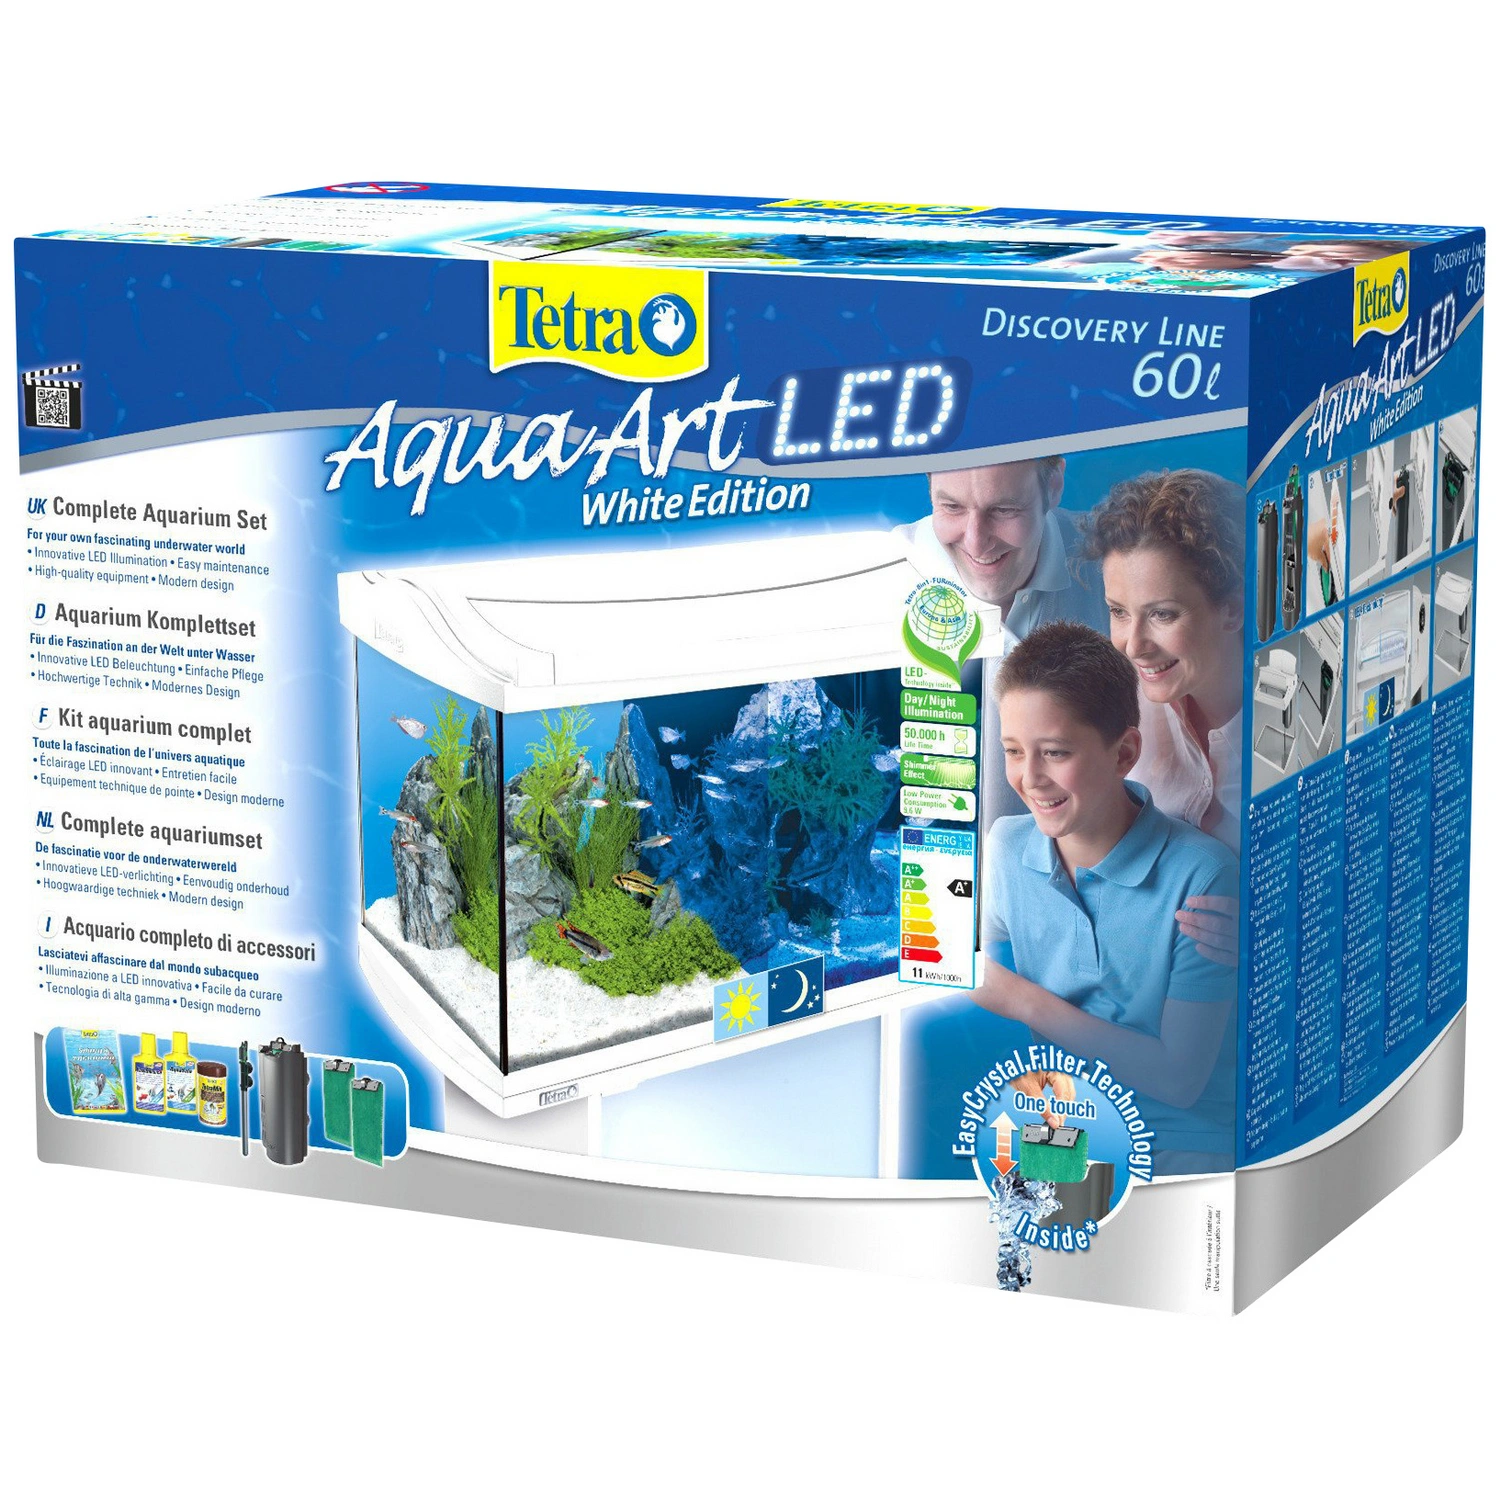 60L TETRA LED AquaArt Aquarium Weiß Tetra Komplett-Set